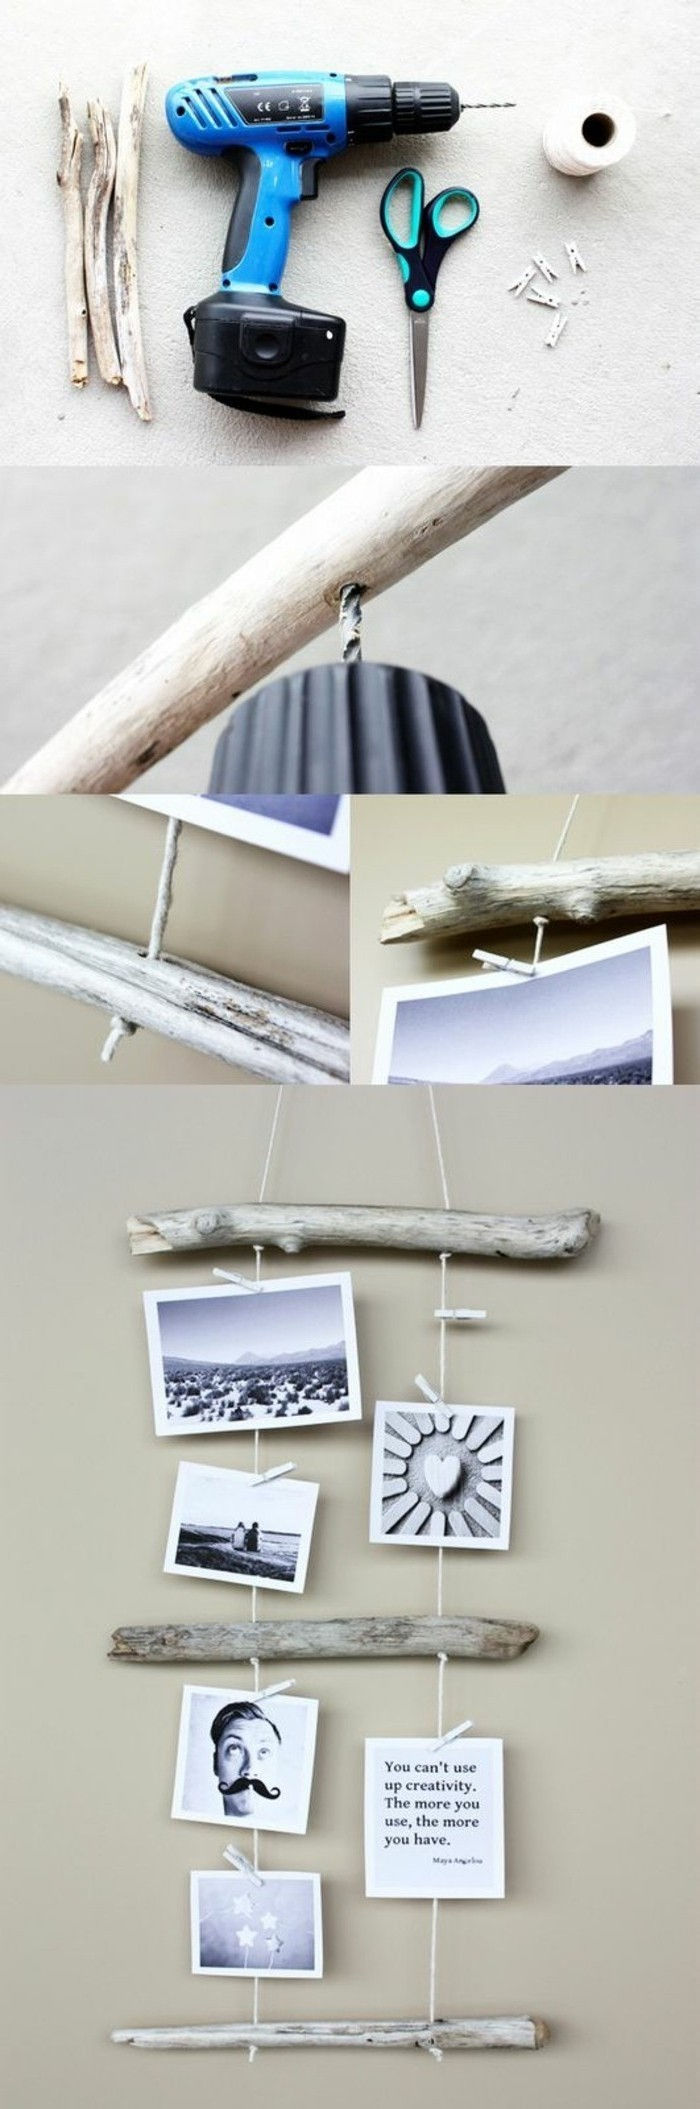 5-tinker-med-drivved-fotowand-själv-making aeste tapeter borra-sax